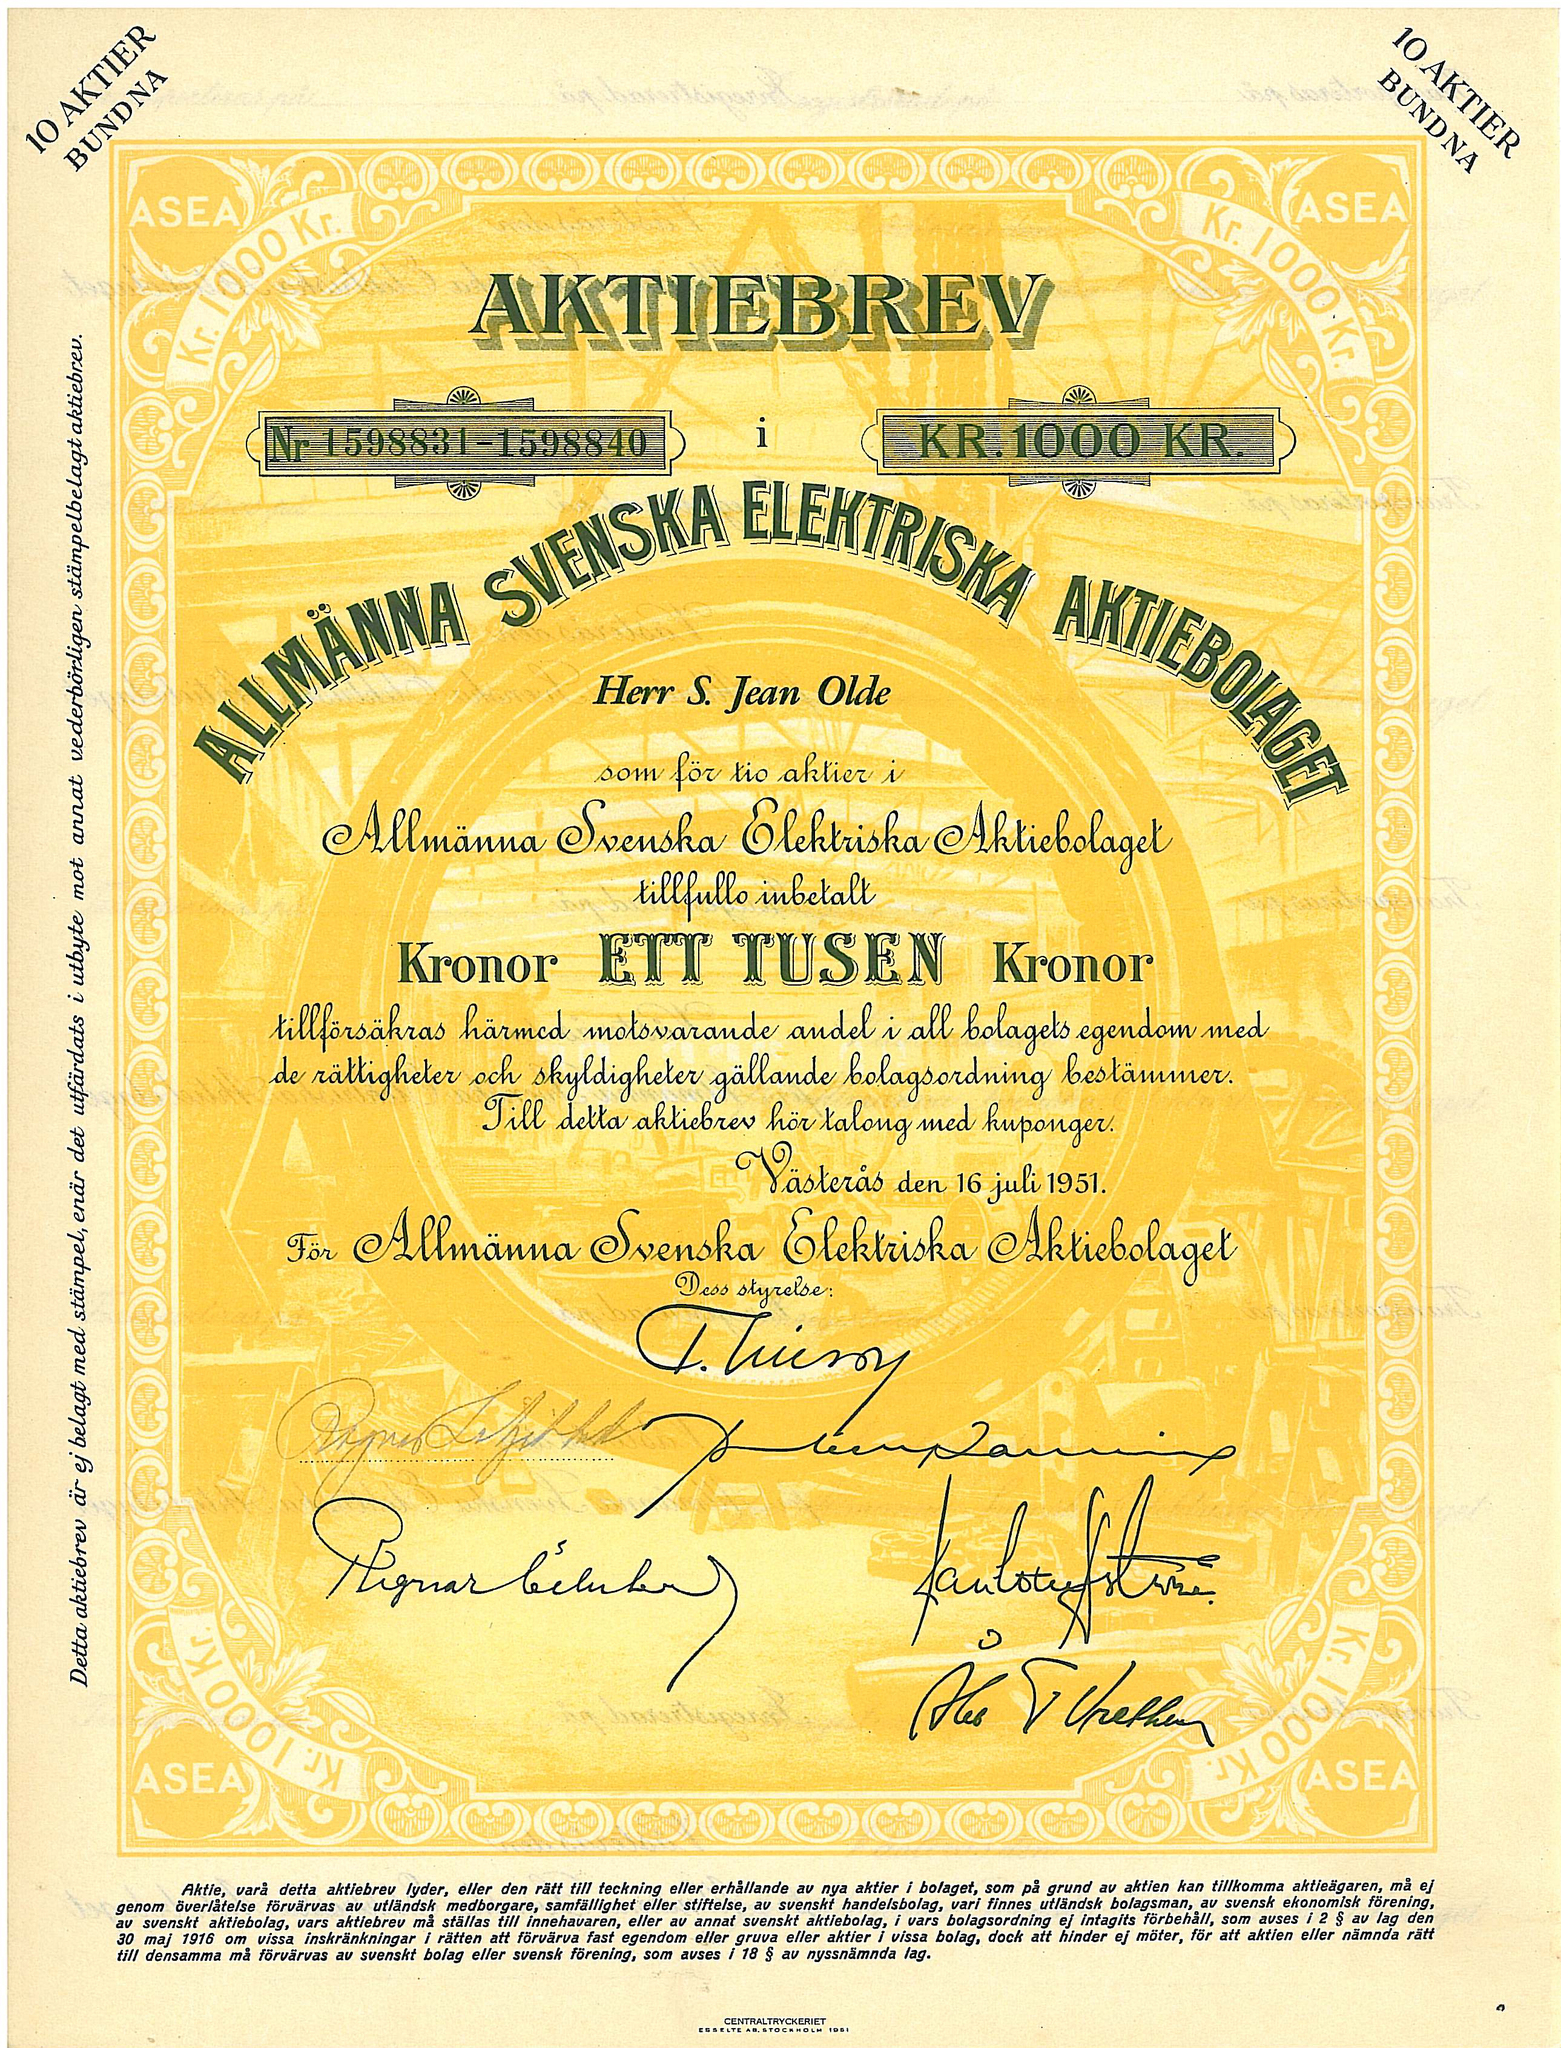 Allmänna Svenska Elektriska AB, ASEA 1951